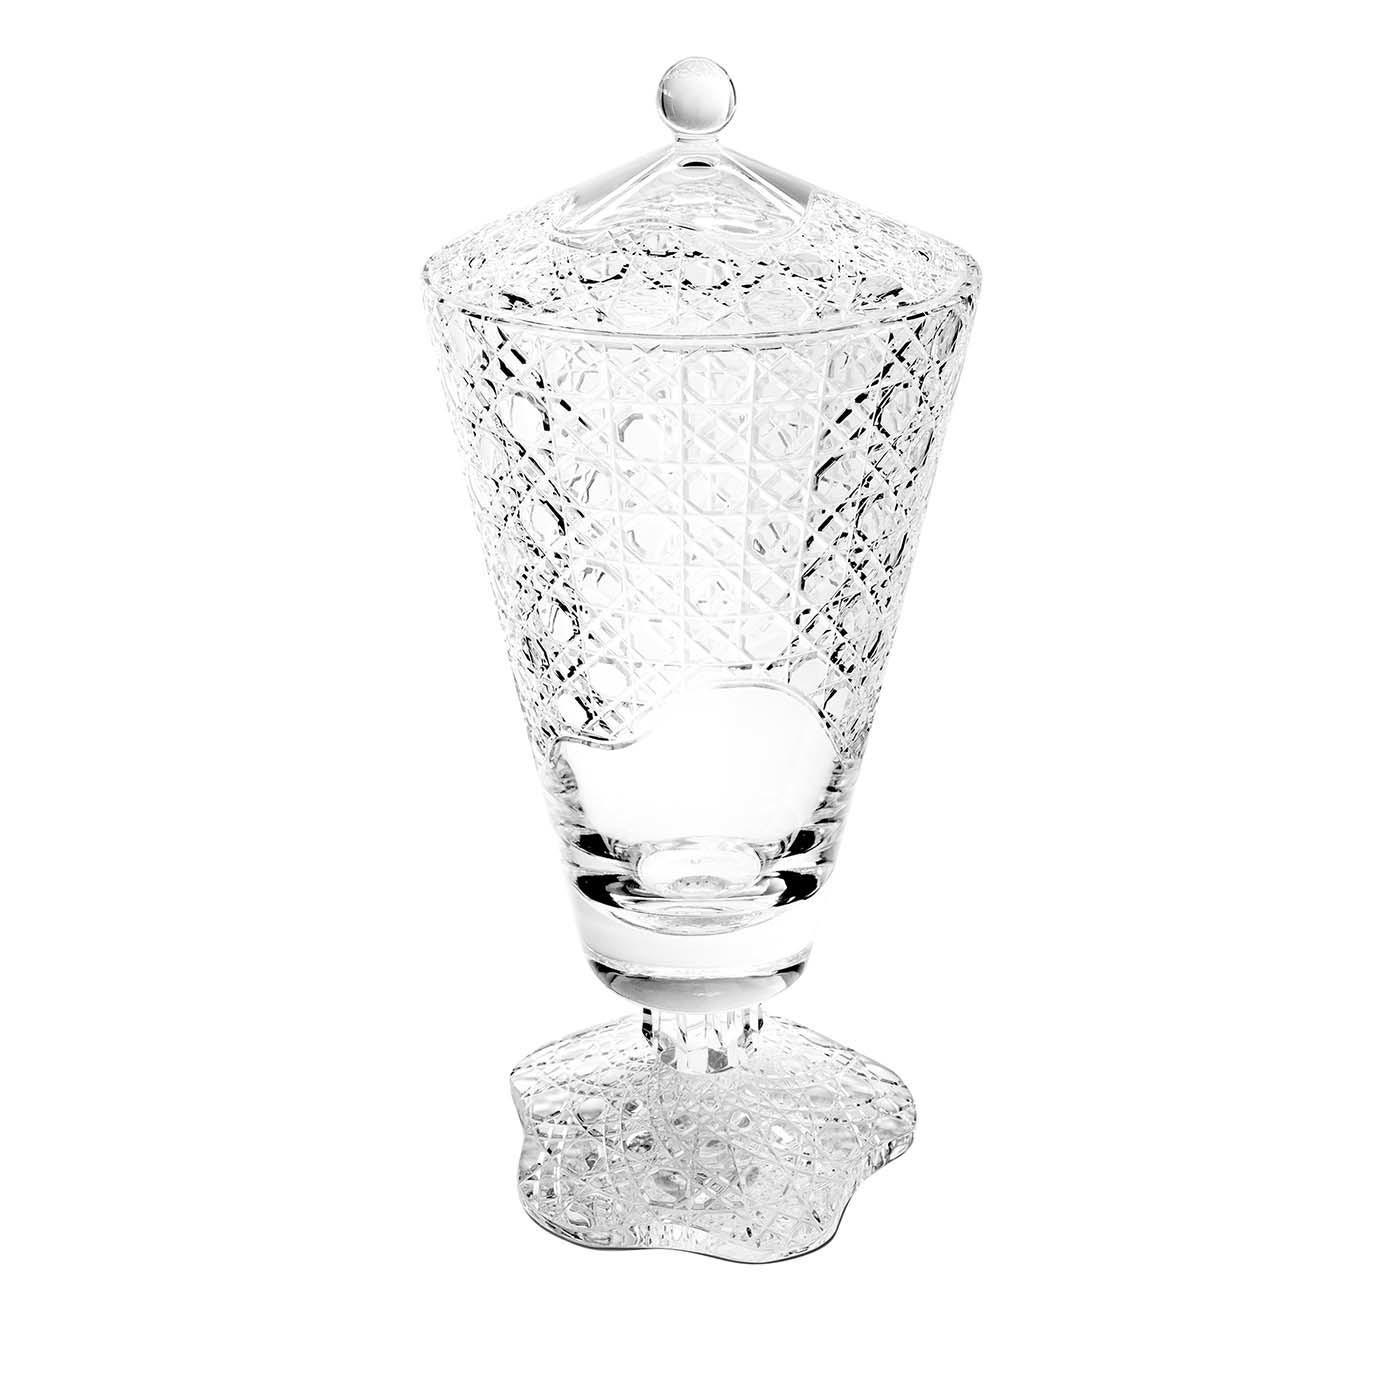 Ce superbe vase avec couvercle fait partie de la collection MetÃ Morphosis. Fabriquée en verre transparent, cette pièce peut être utilisée comme un récipient élégant dans une cuisine, un salon ou une salle à manger, tout en imprégnant chaque maison